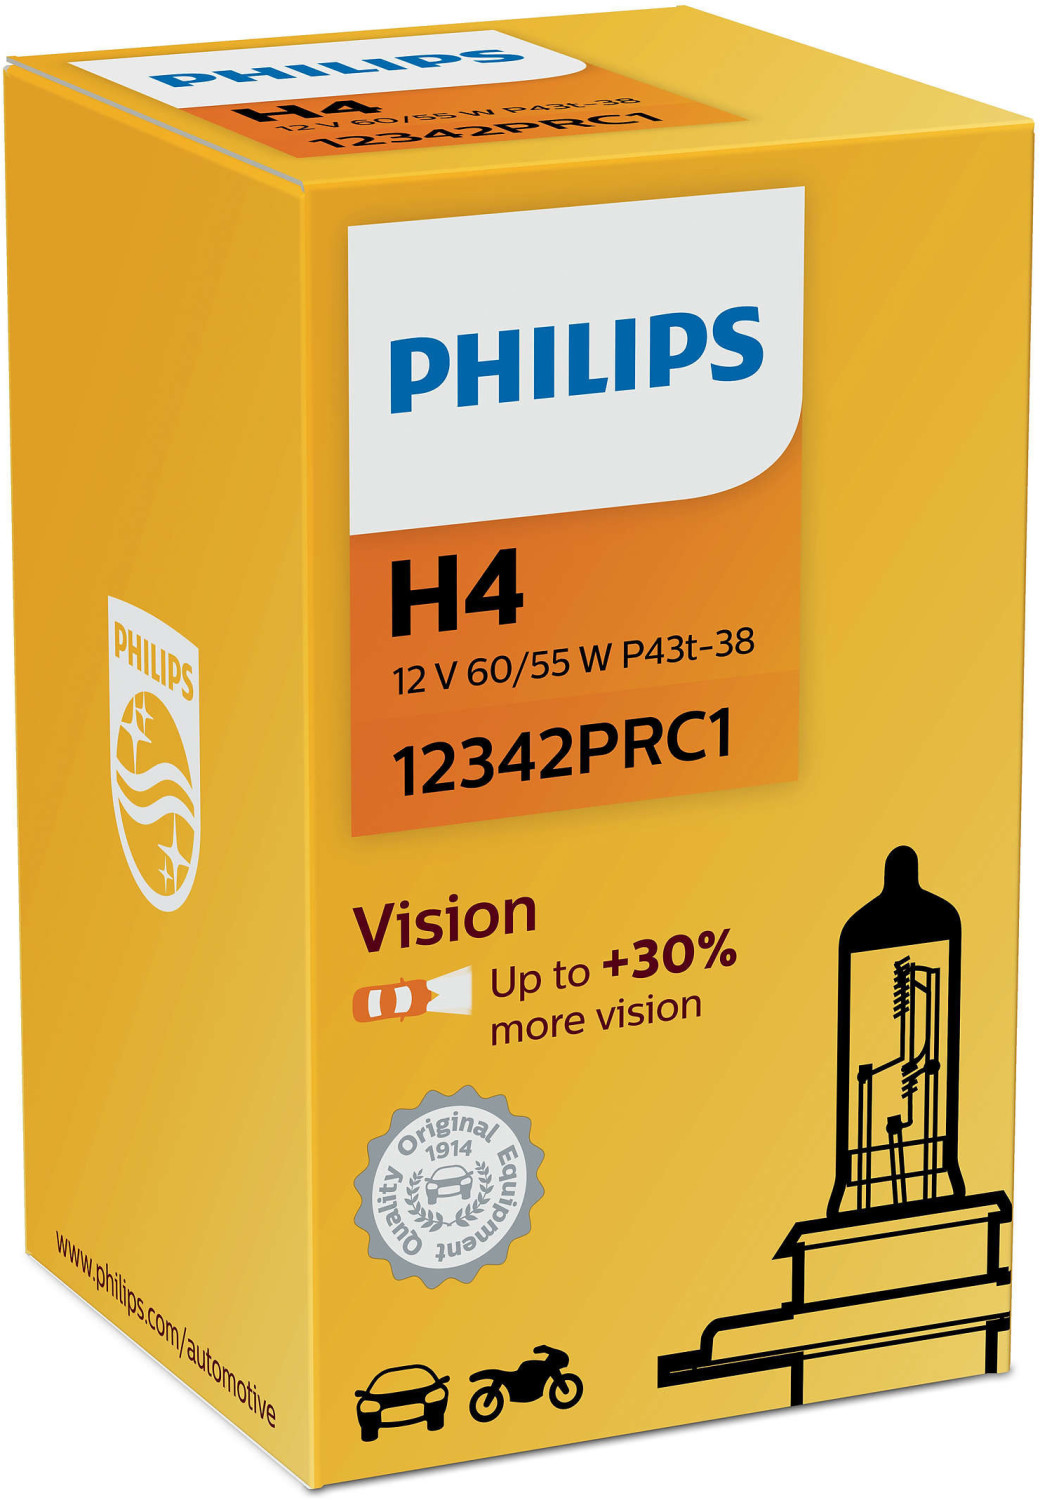 Philips H4 Vision (12342PRC1) ab 2,13 €